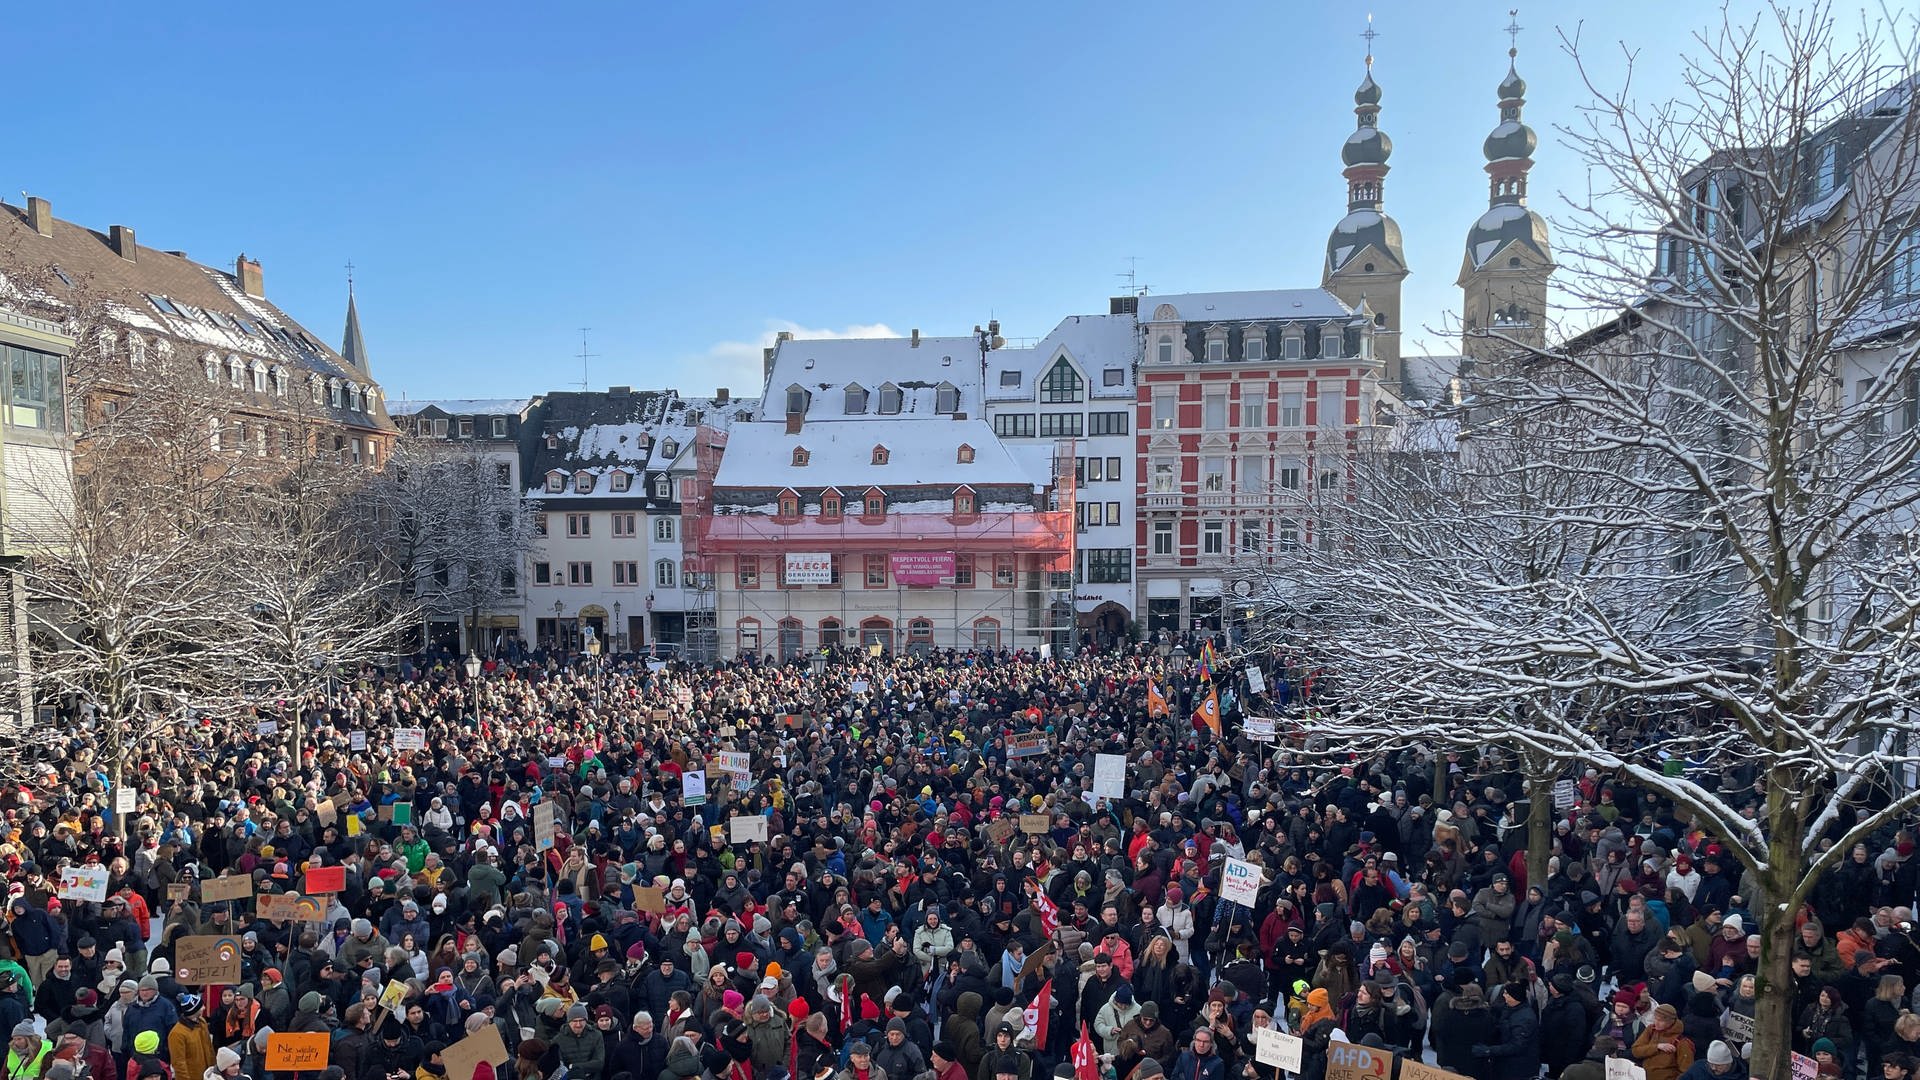 Kundgebung gegen rechts in Koblenz mit rund 5.000 Teilnehmern